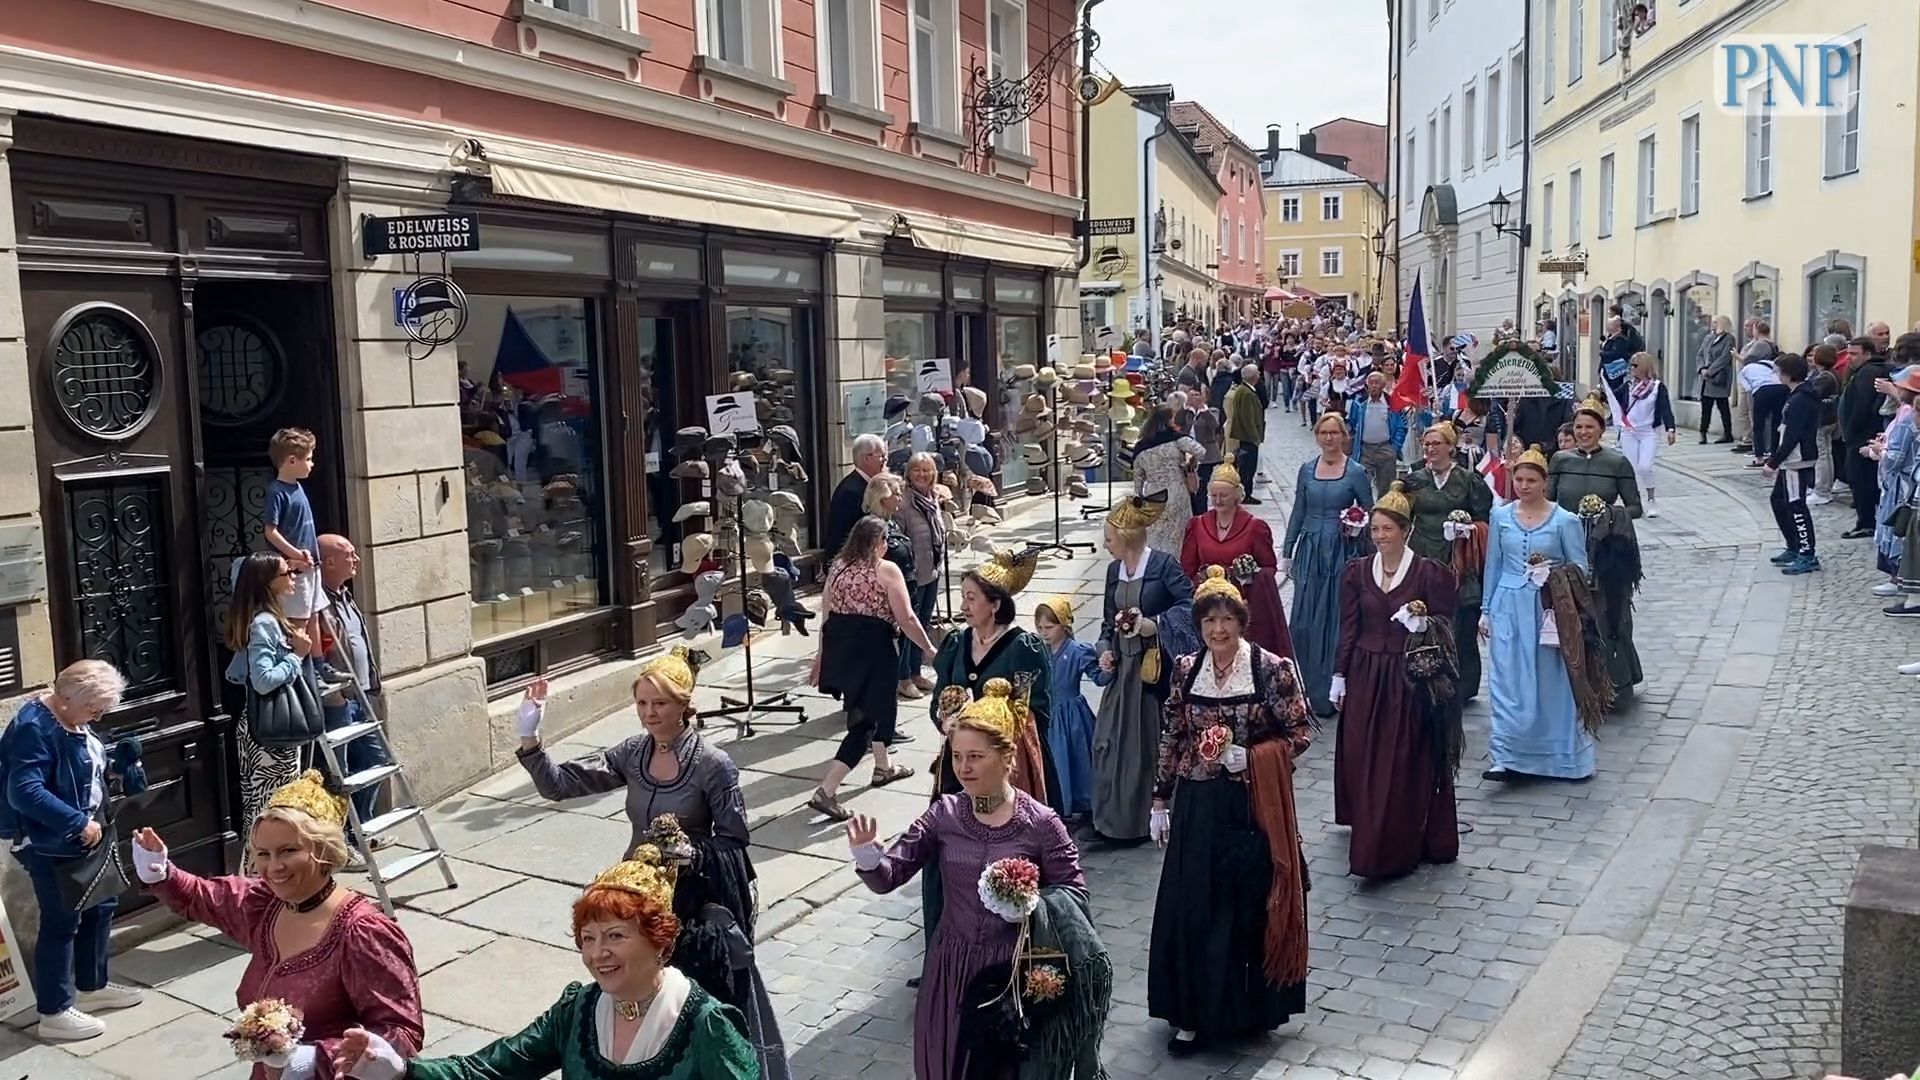 Maidultfestzug in Passau